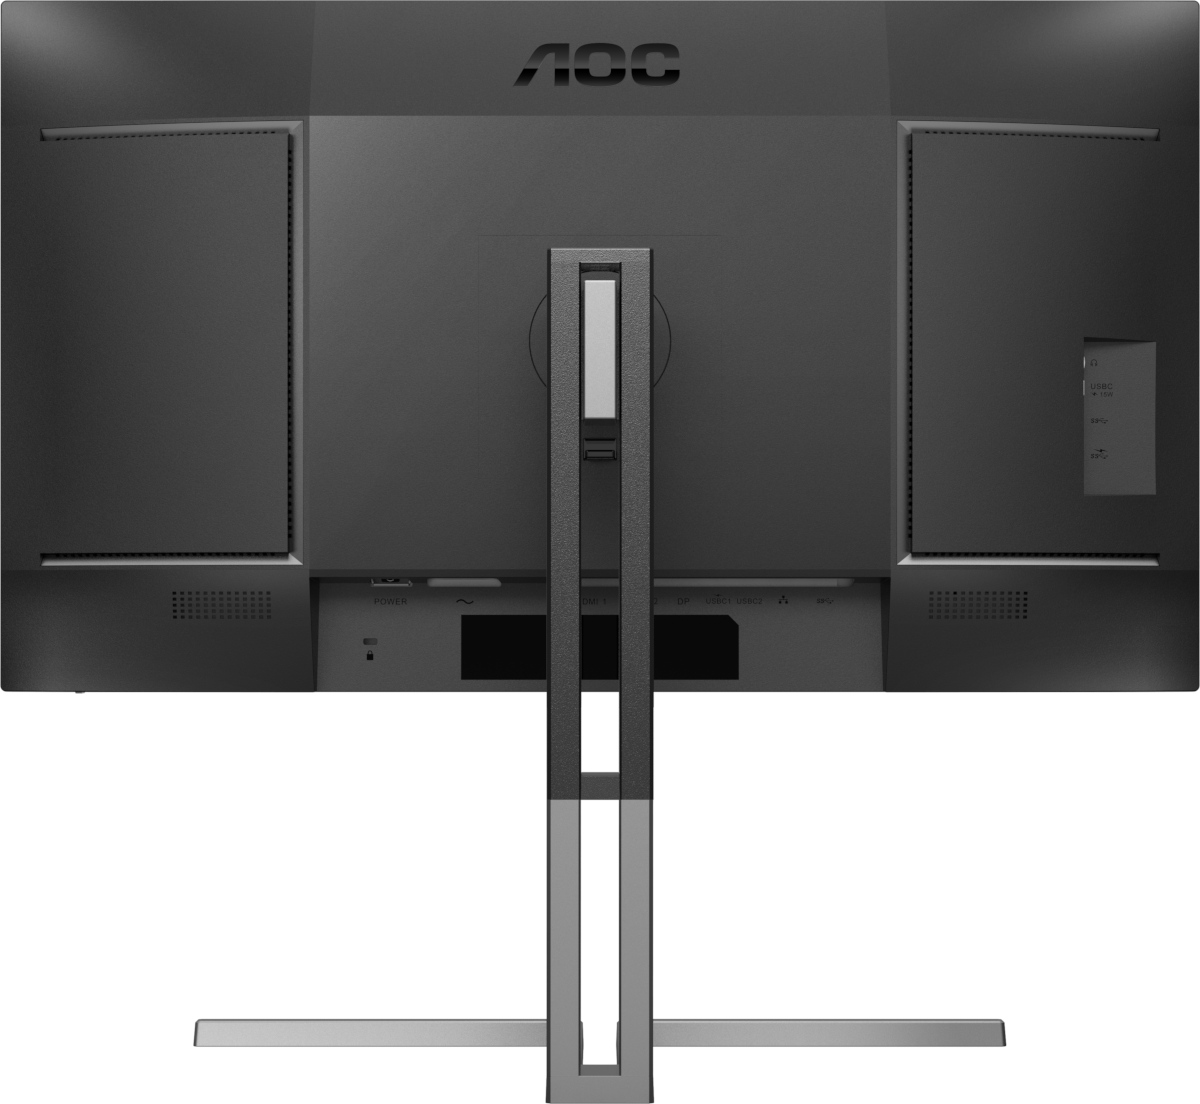 AOC Pro U3 显示器的色彩会让您满意